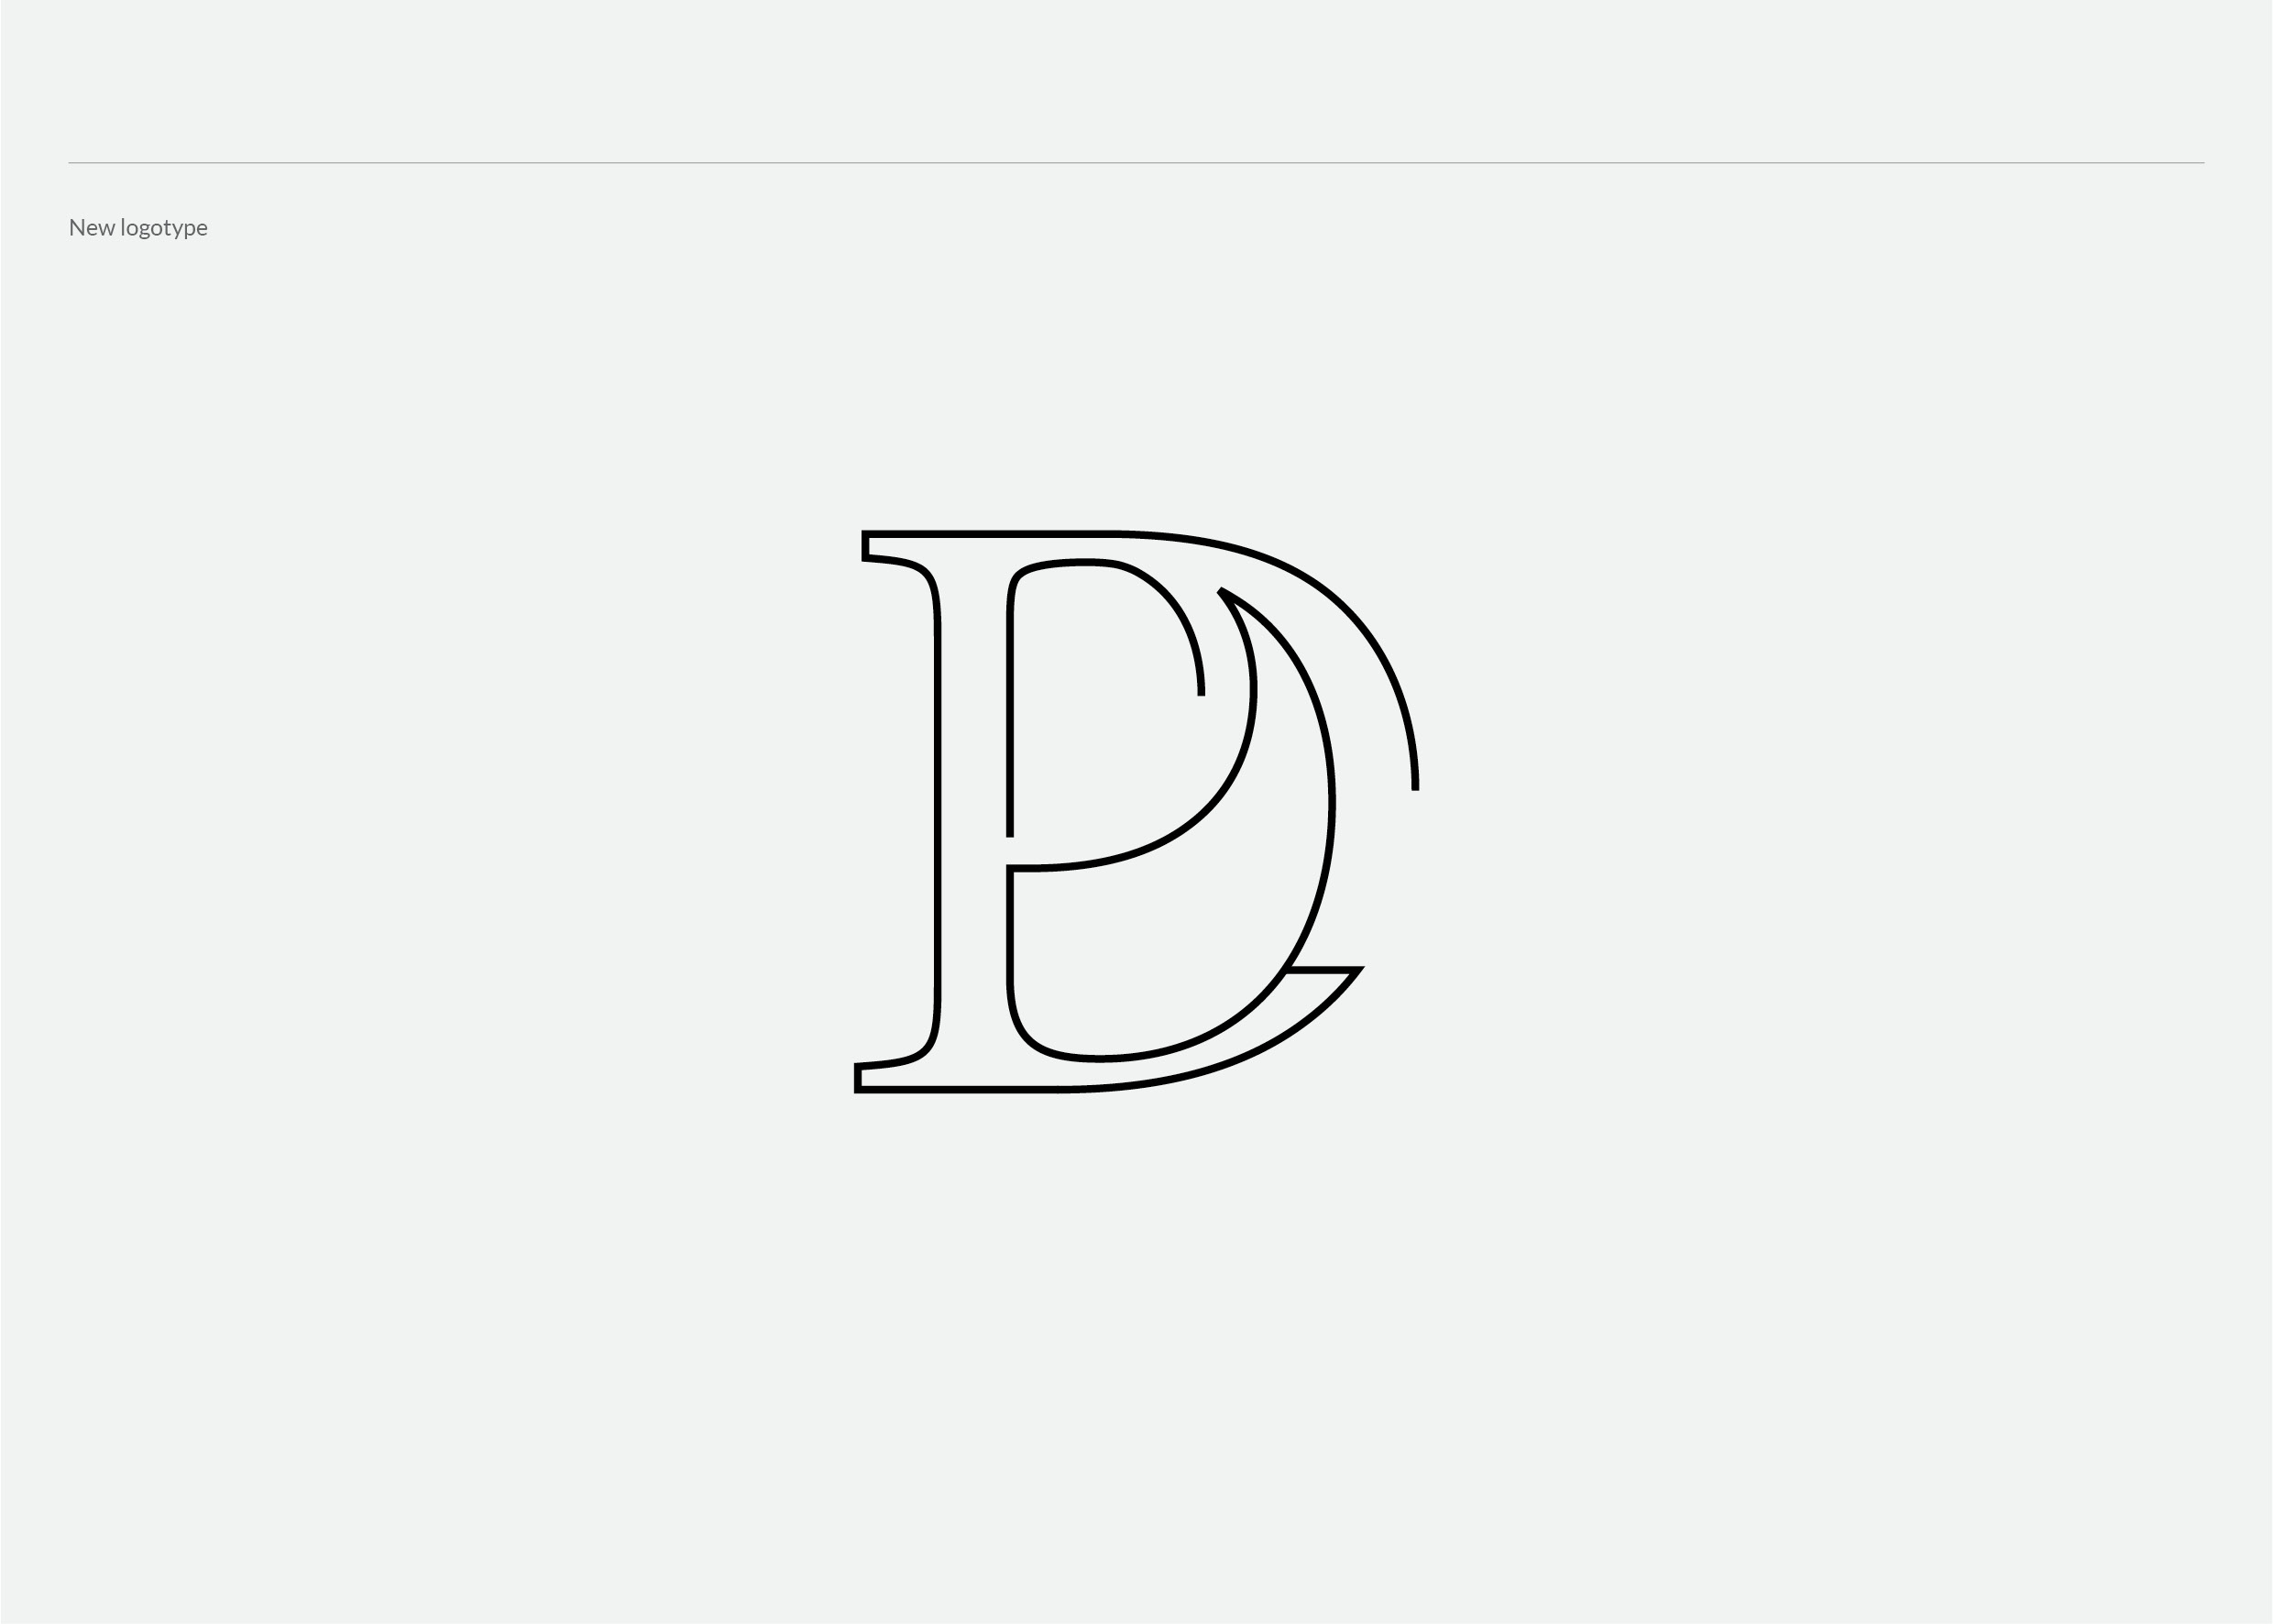 LDP logotype portofolio5